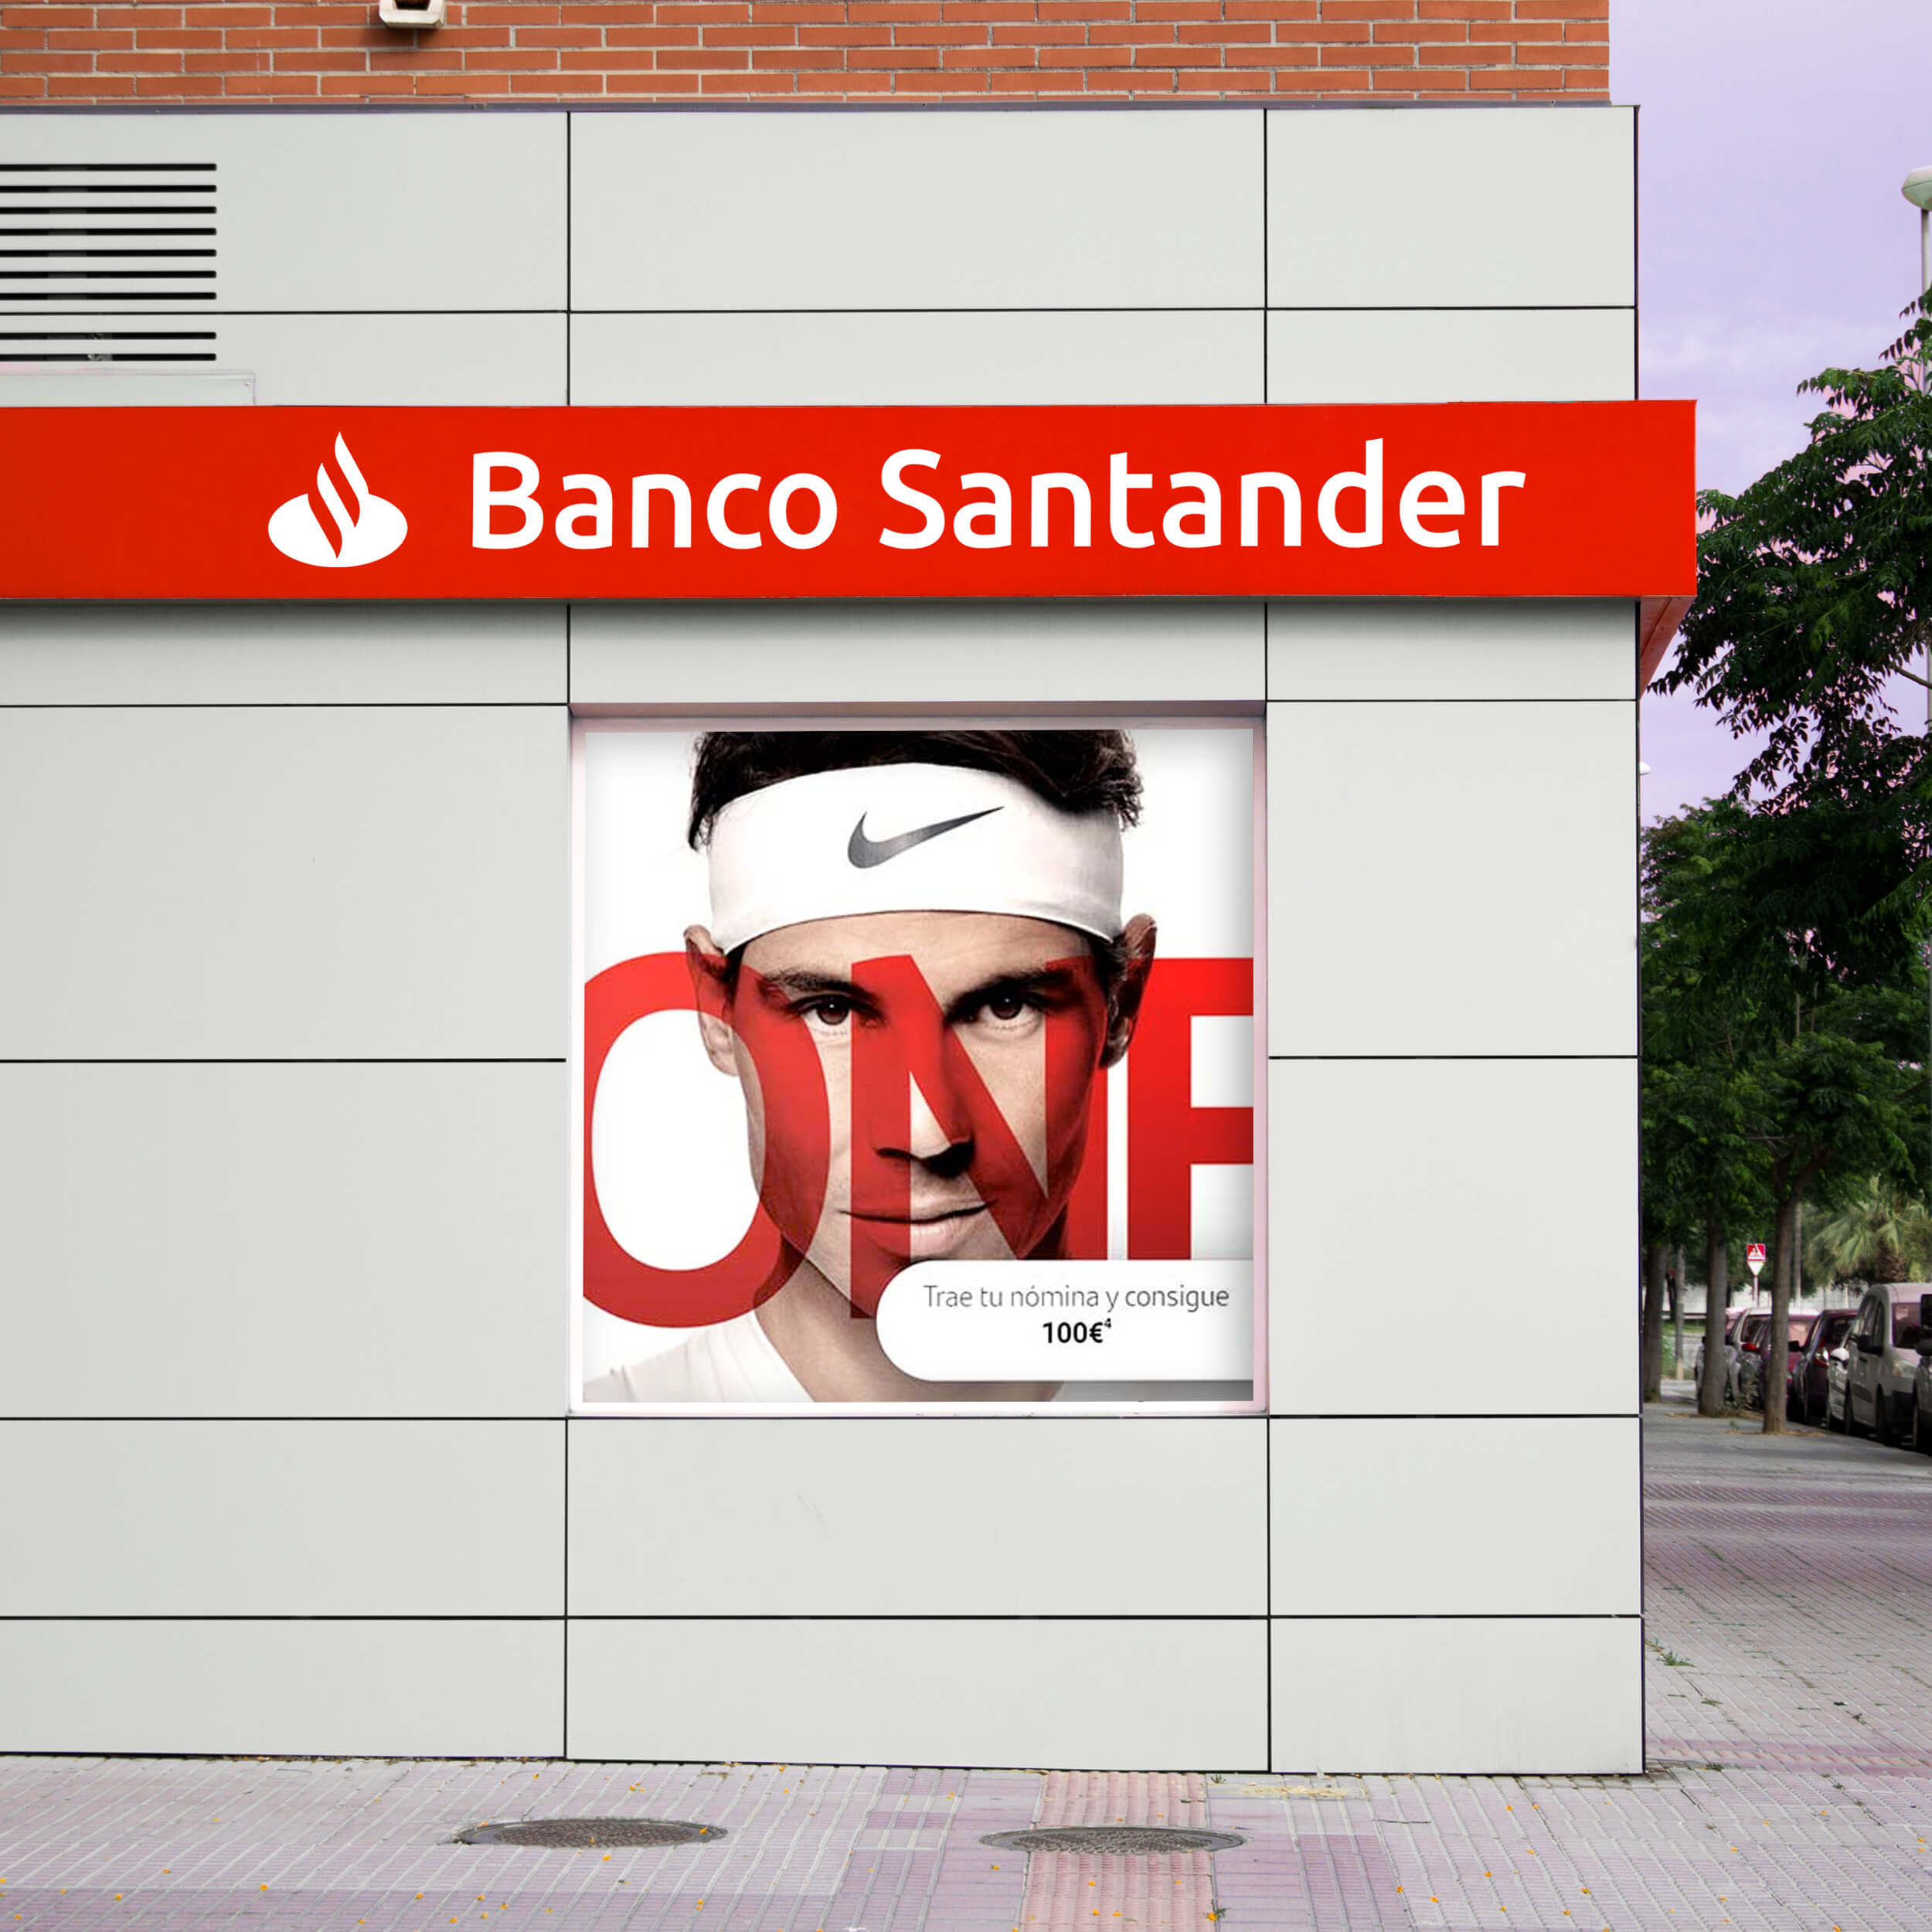 Imagen de la fachada del banco santander rotulada en el material dobond de color rojo, calada con luz led.